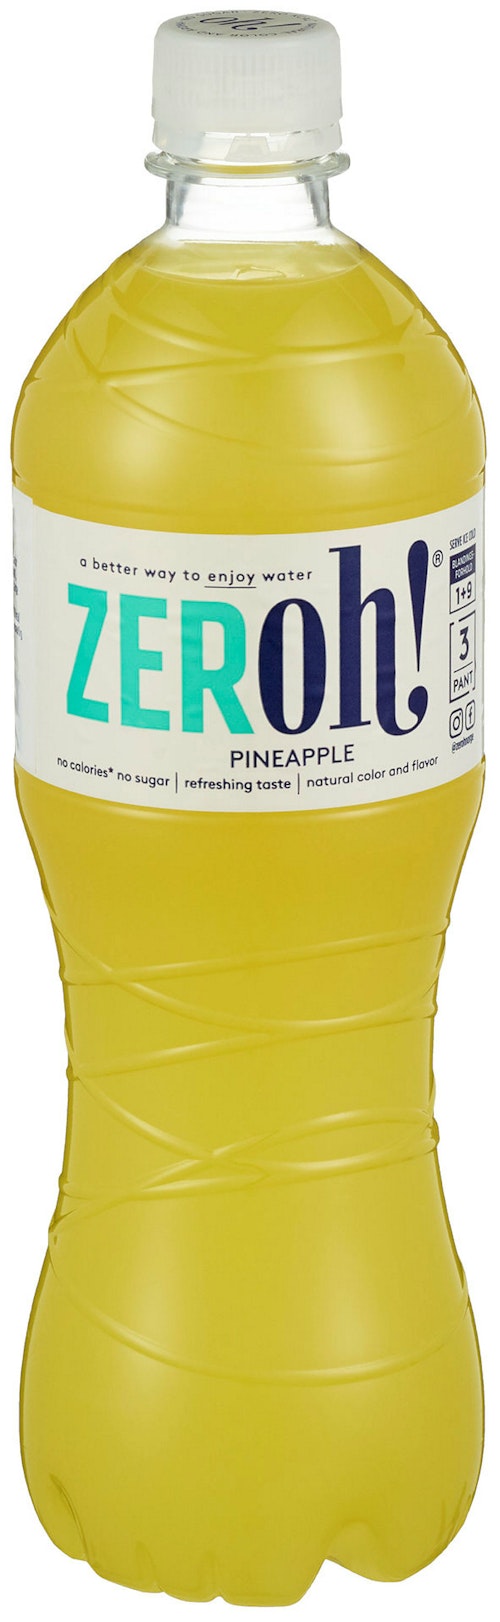 Zeroh! Pineapple